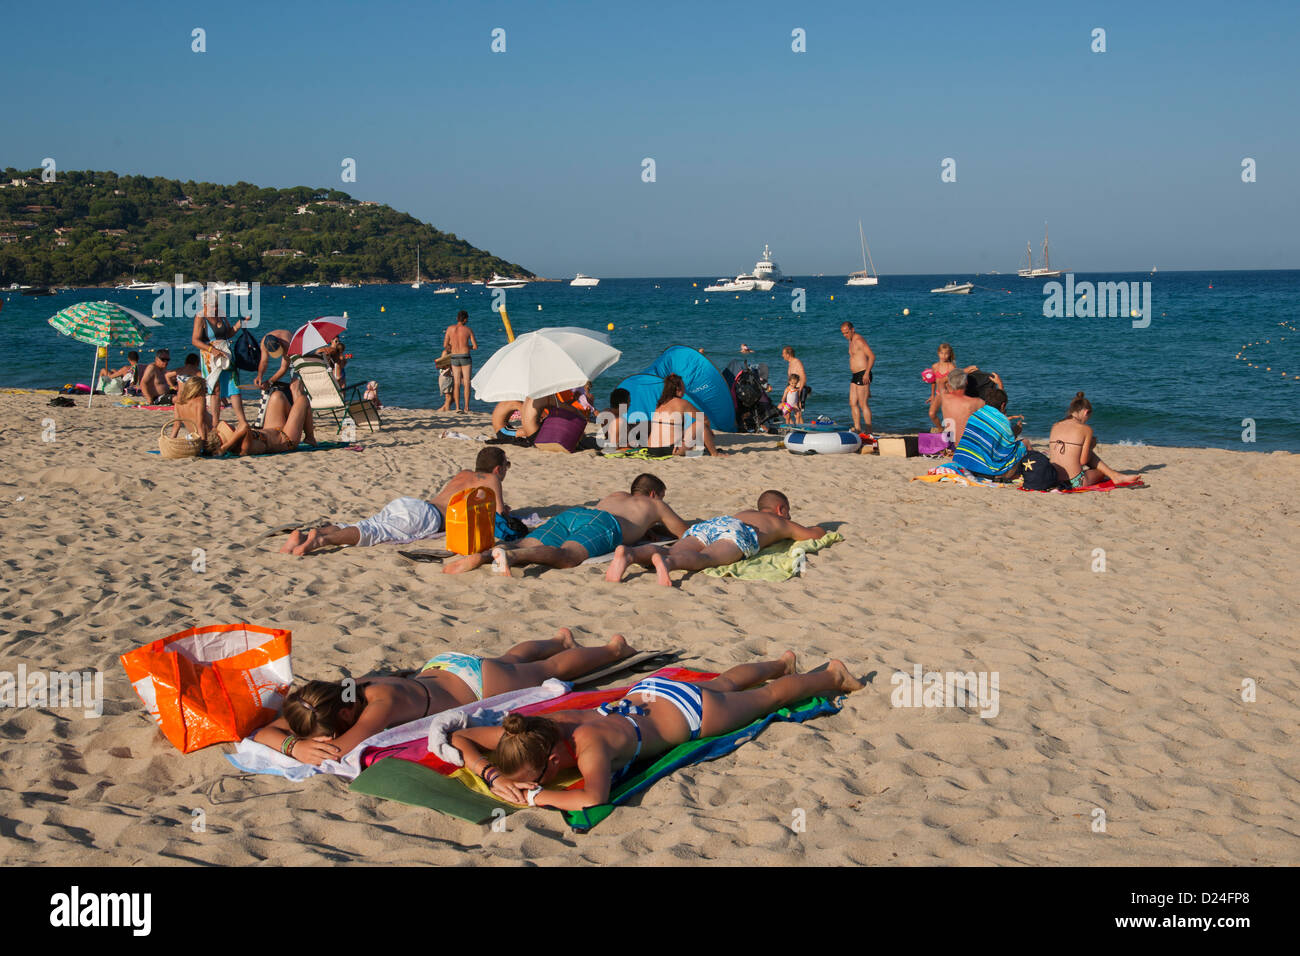 Sunbath, Sun, People, Beach, Tahiti, Plage Tahiti, Sea, Sant Tropez, St. Tropez, France, Europe Stock Photo